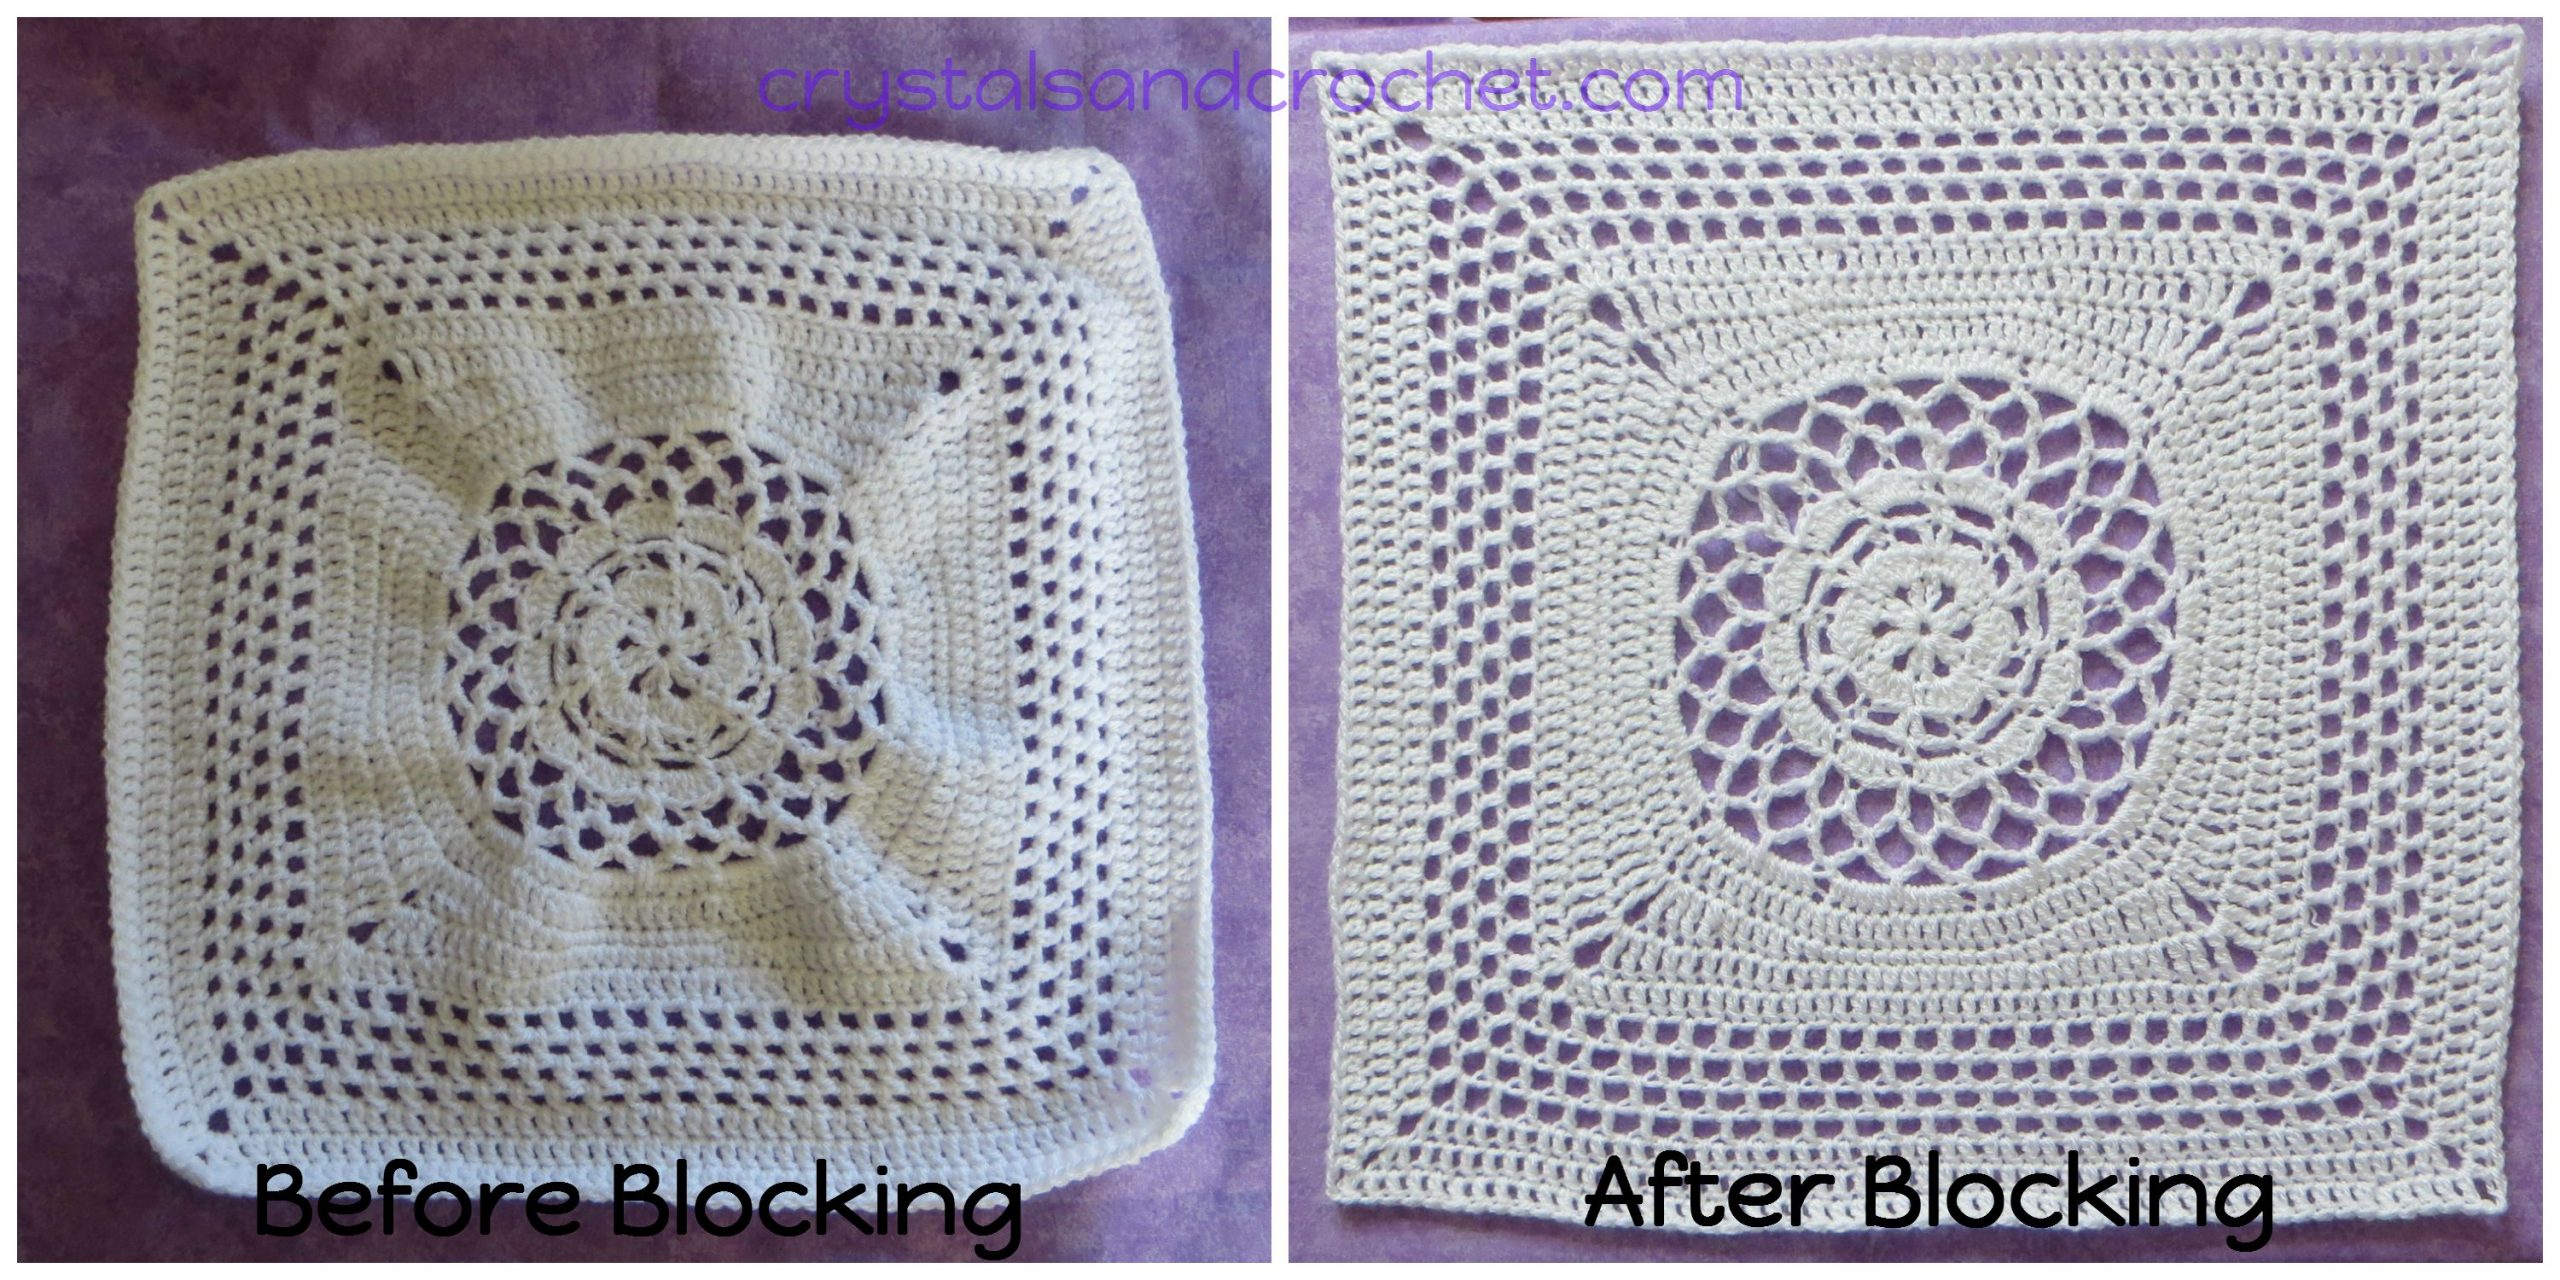 Blocking - Crystals & Crochet